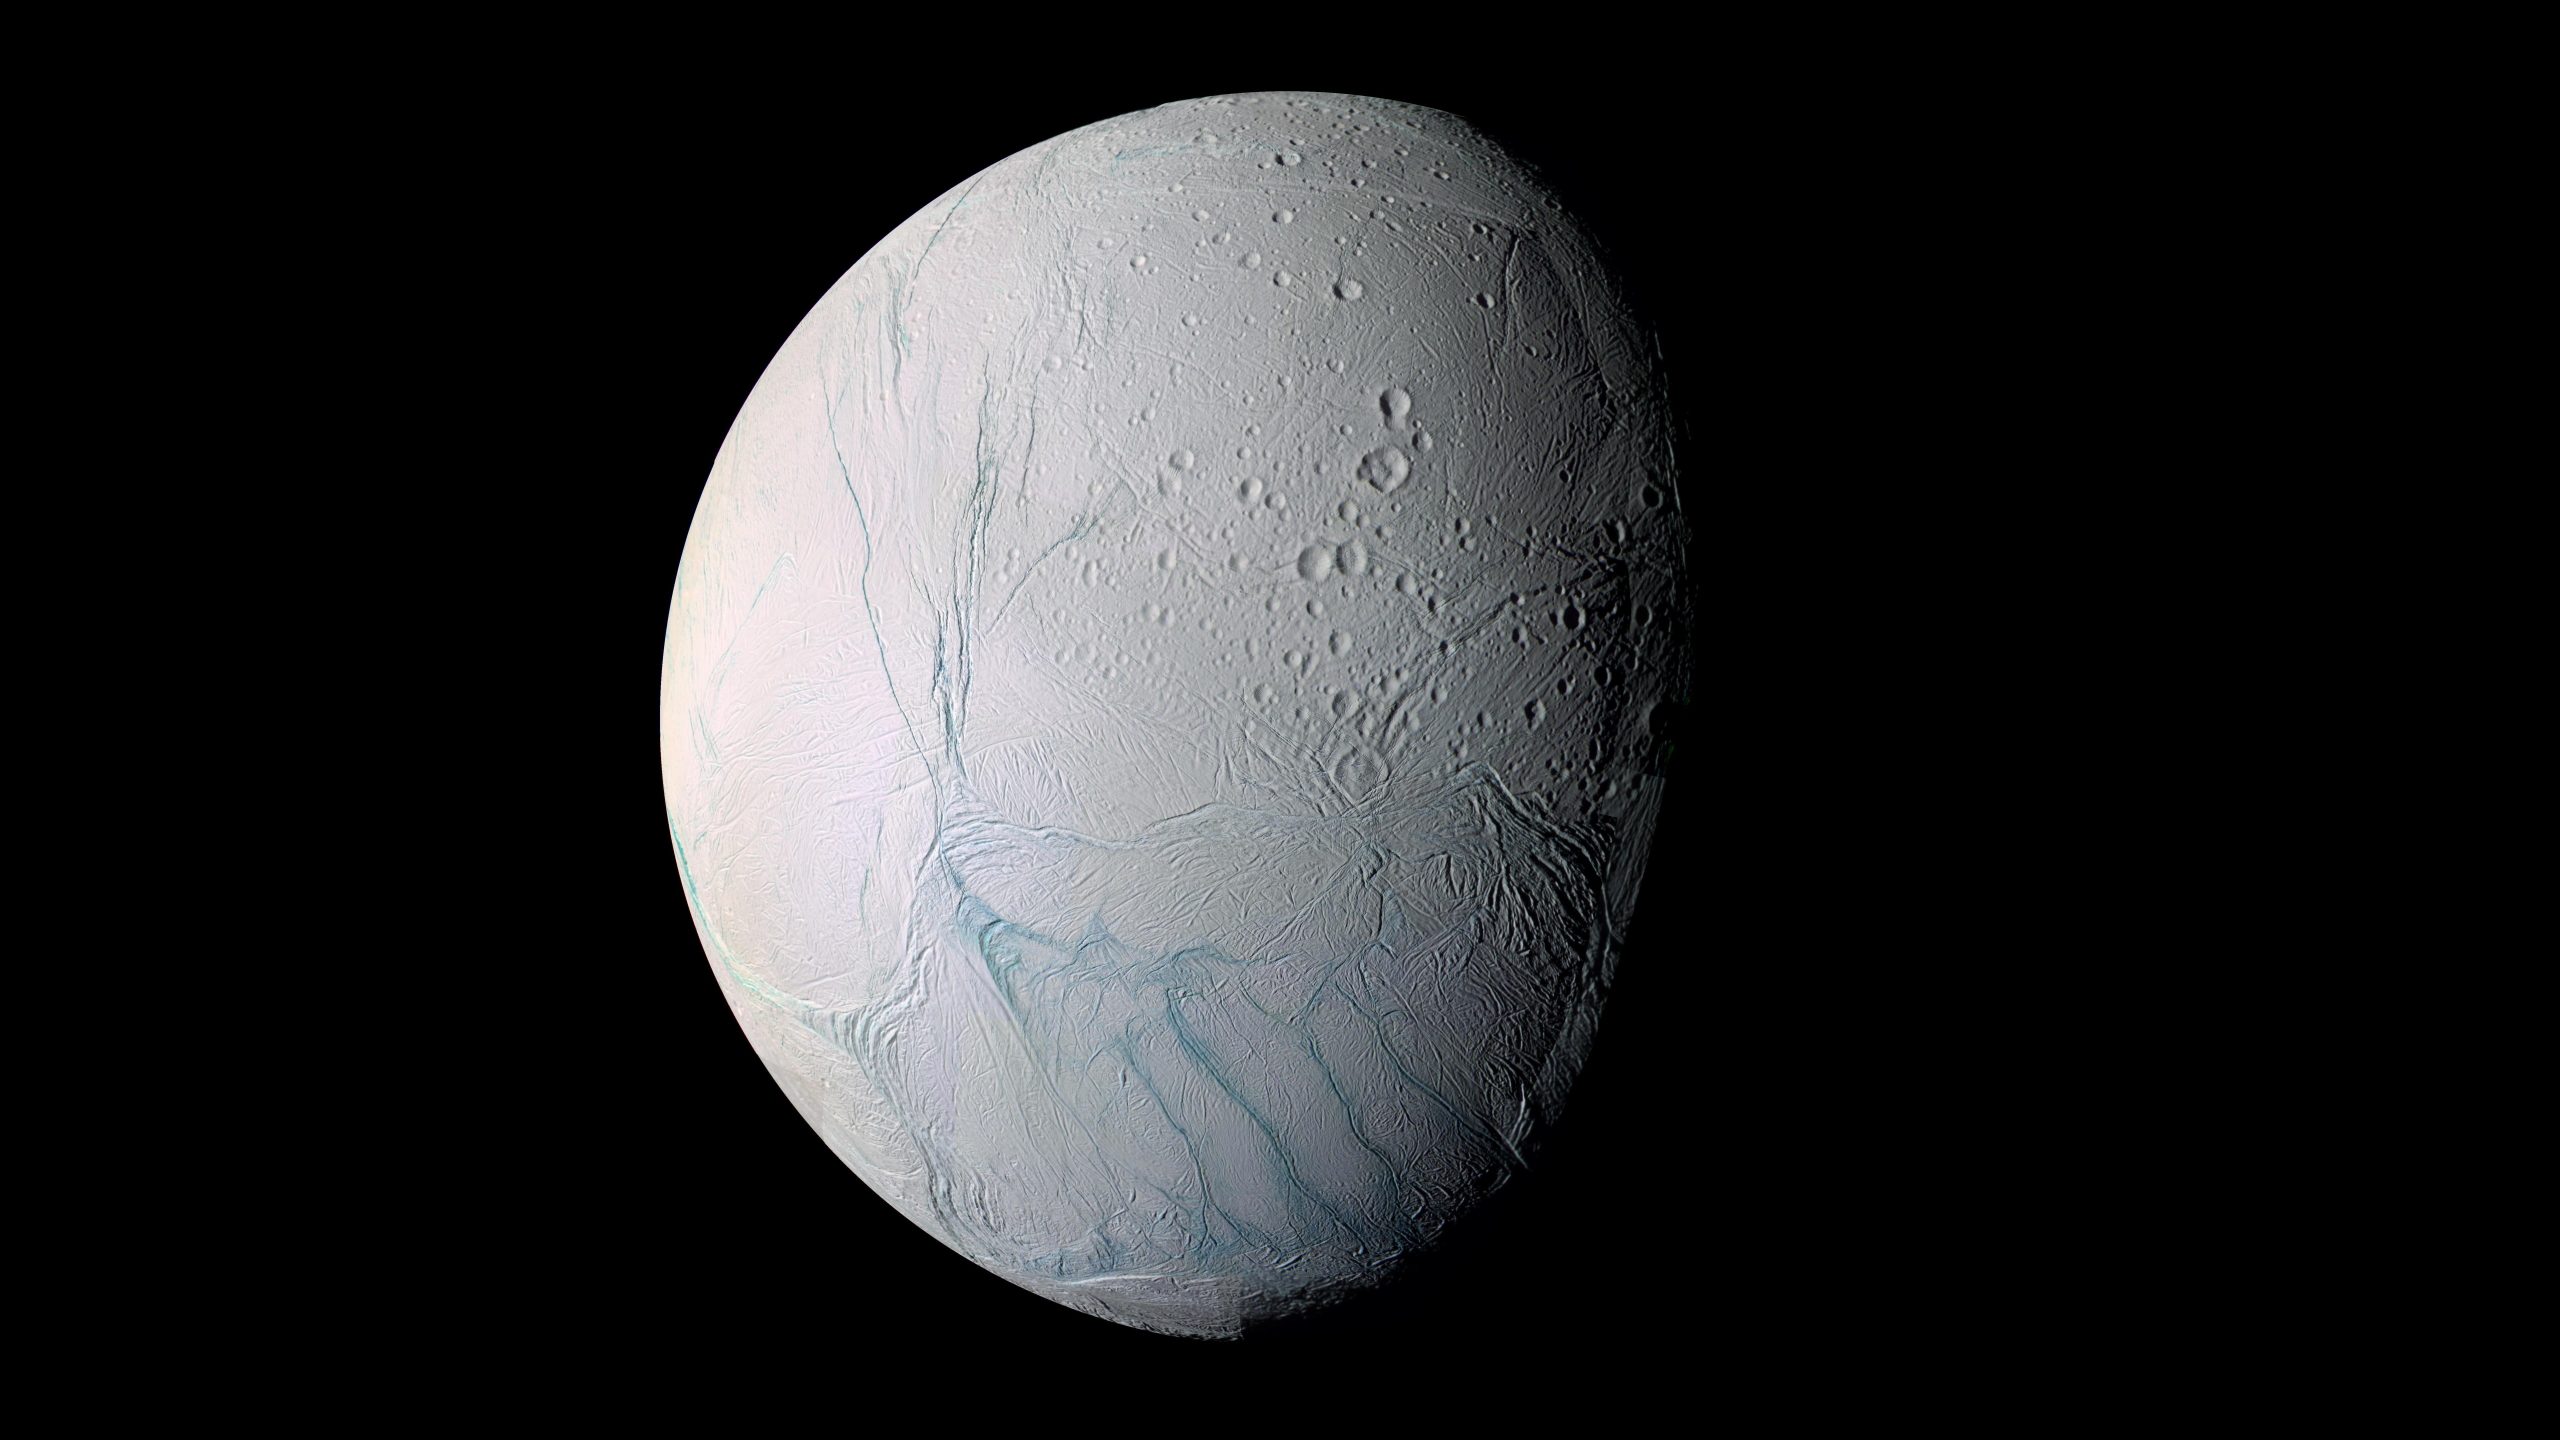 Gray moon wallpaper, planet, Enceladus, Solar System, Saturn's moon